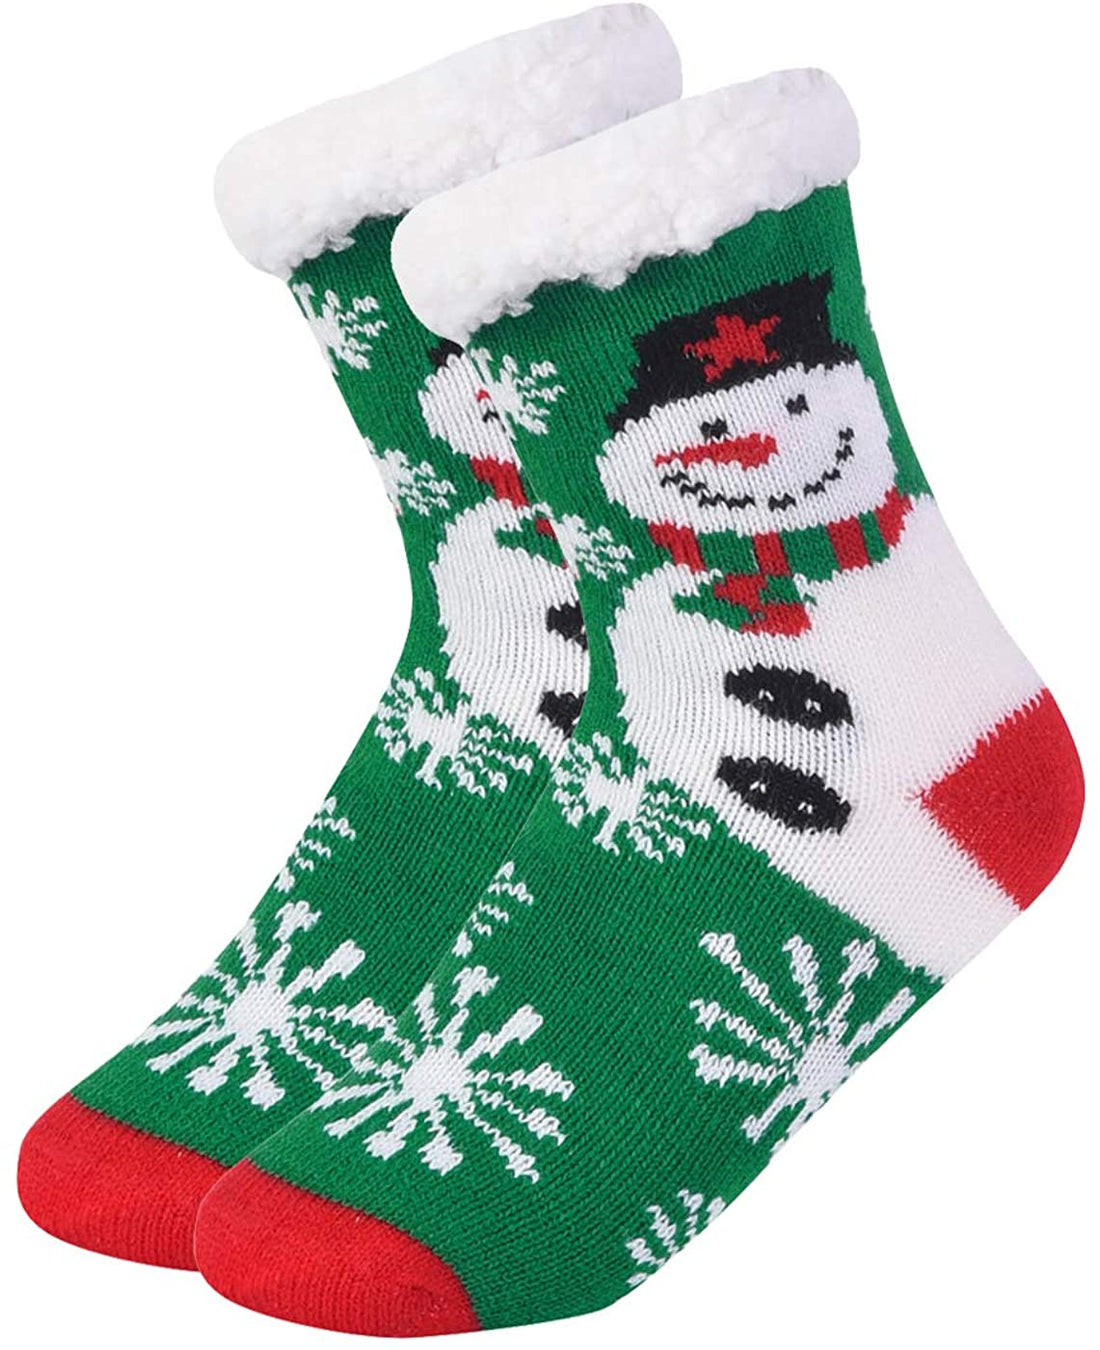 DOORBUSTER Deal - Snowman Sherpa Lined Socks